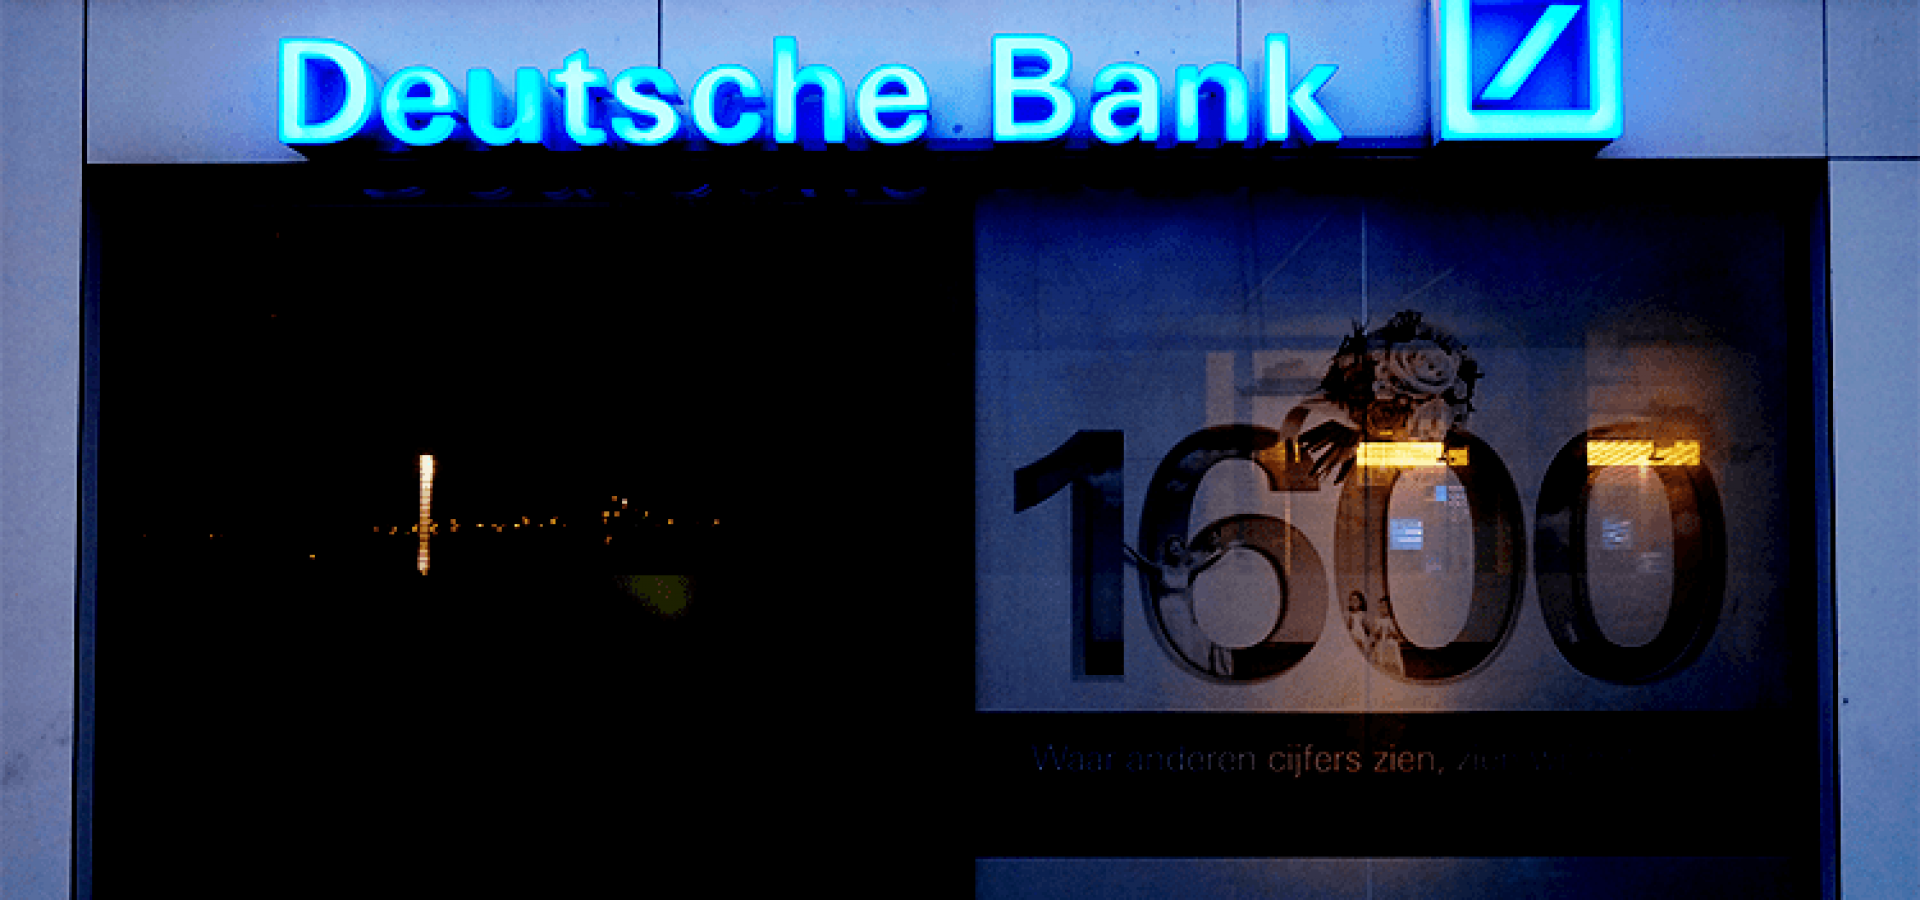 German Bank Boost Wealth Management - Wibest Broker